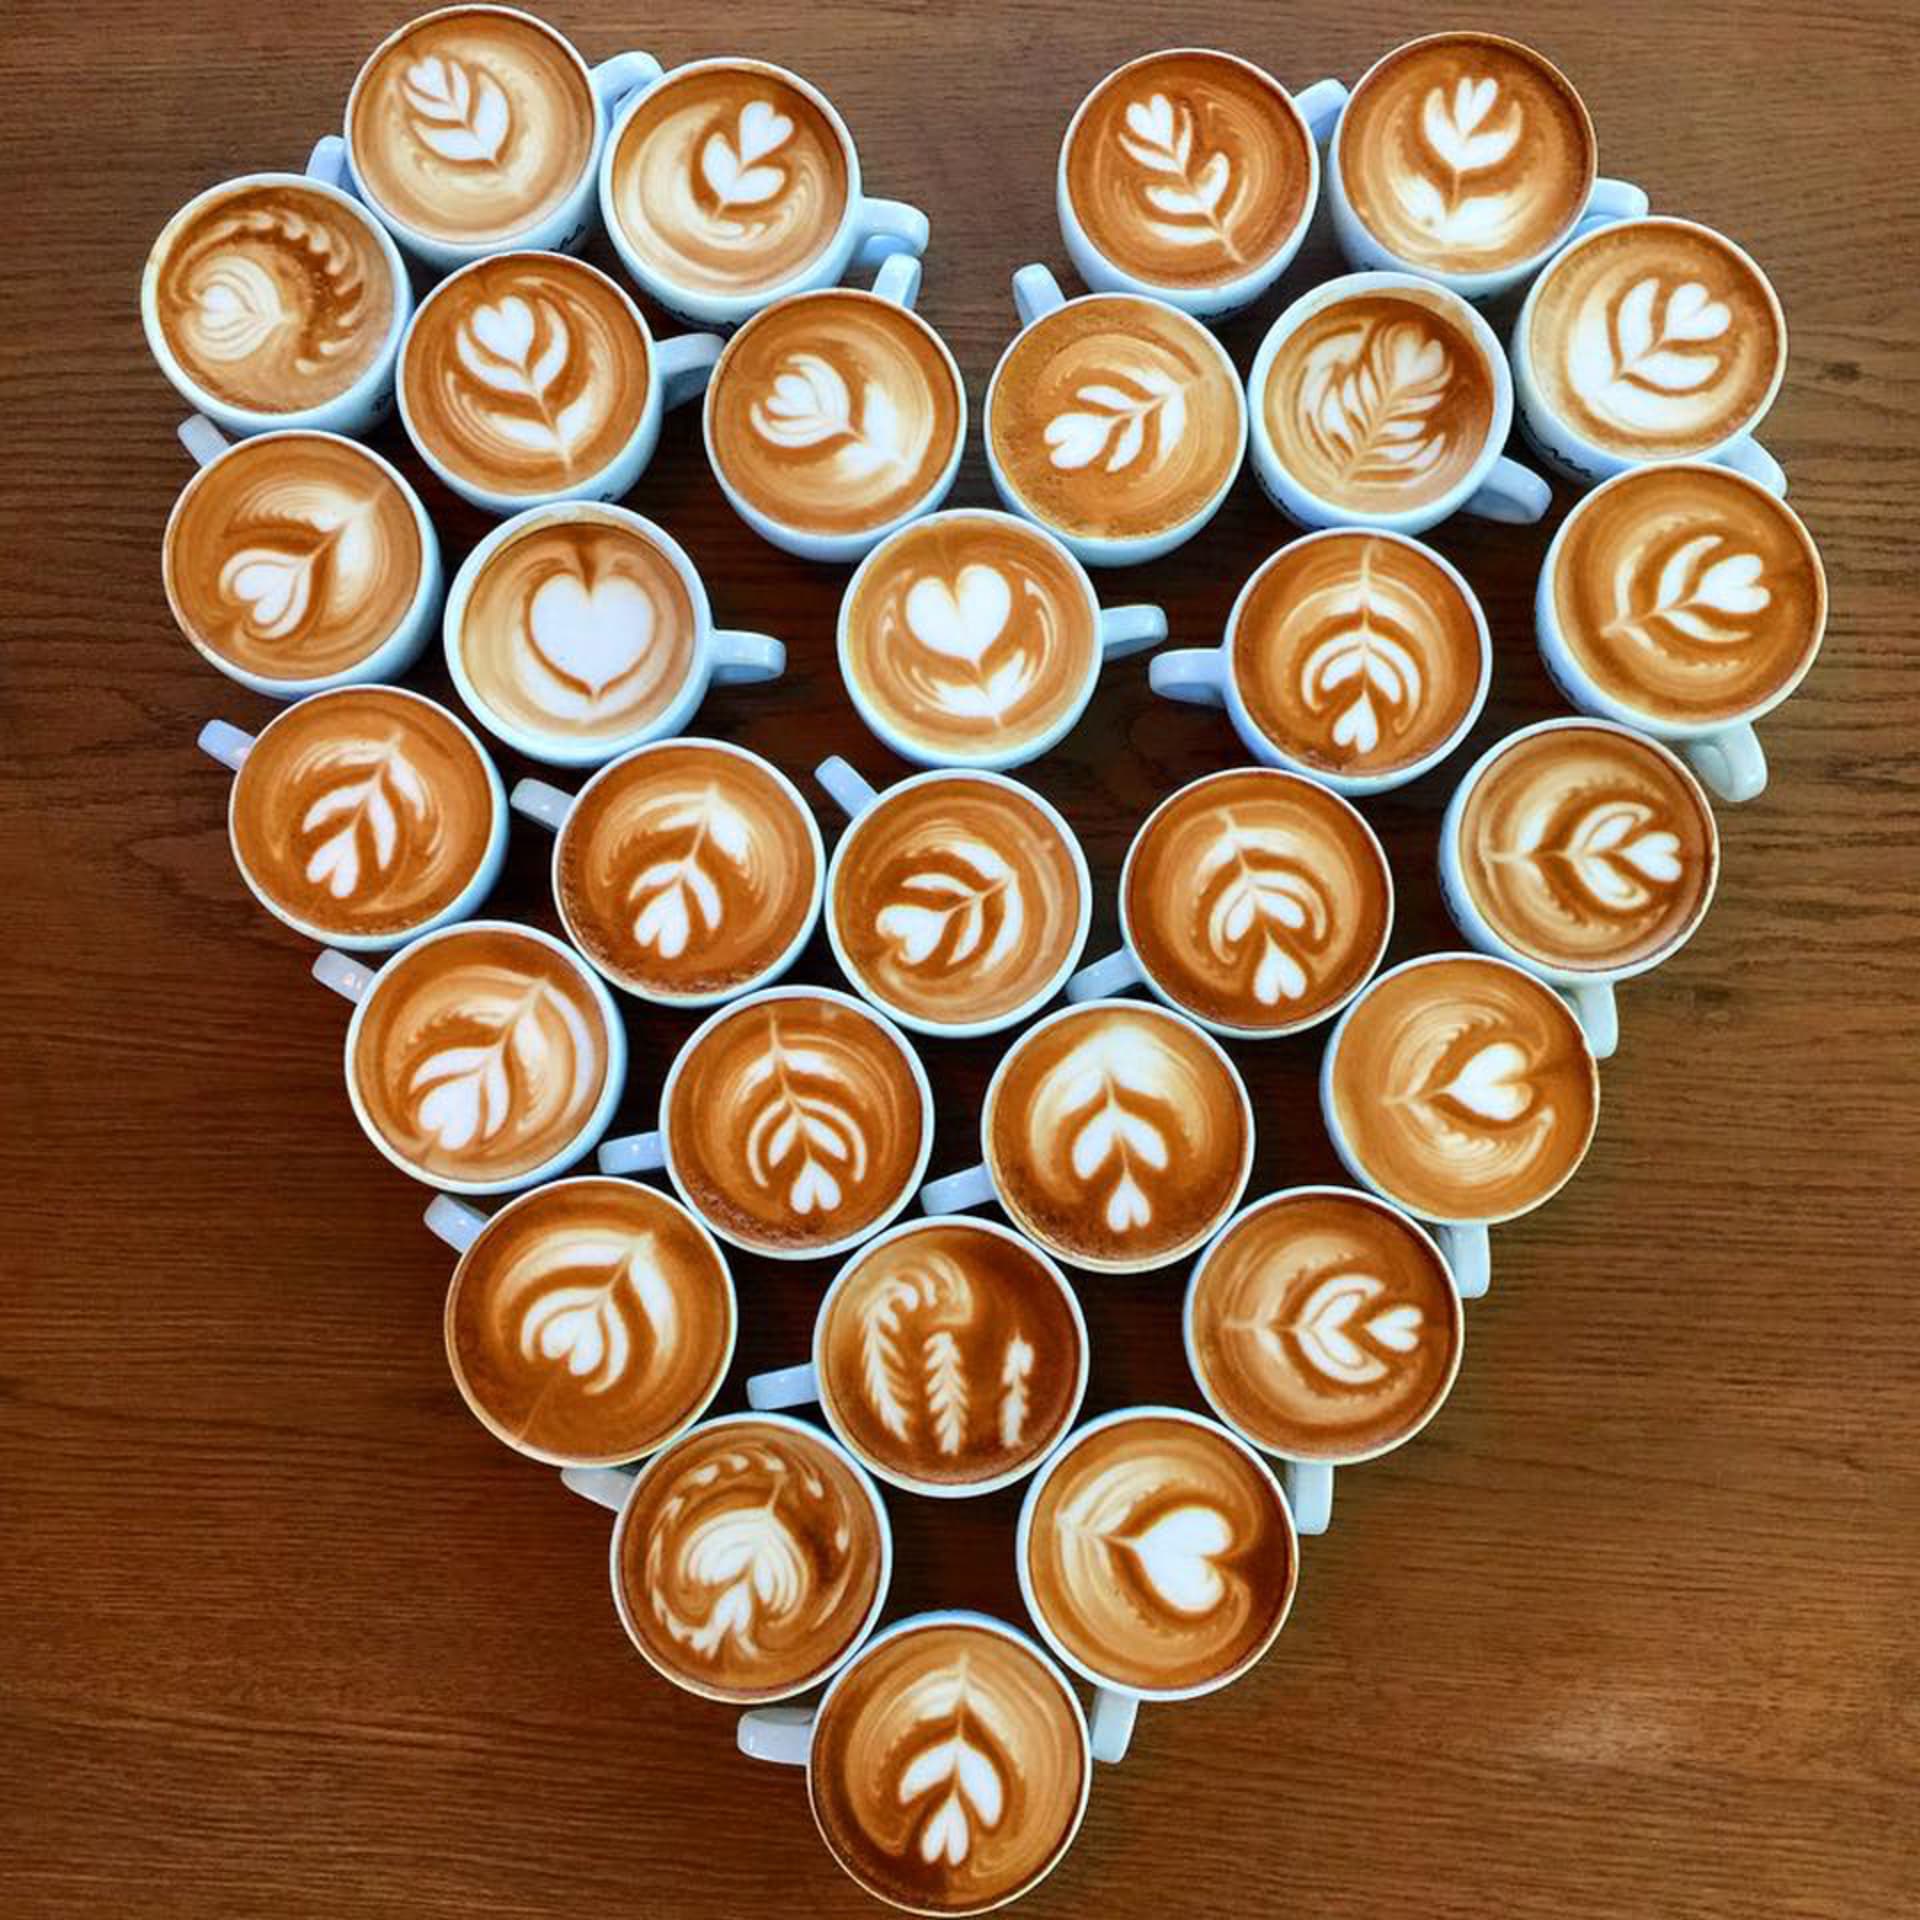 Spojte svou lásku s vášní pro kávu. V kavárnách Costa Coffee se můžete těšit na Caffe latte s bohatě napěněným mlékem posypaným skořicí nebo čokoládou se vzorem srdce a na velké linecké srdce za akční cenu 79 Kč (platí od 11. do 17. února).